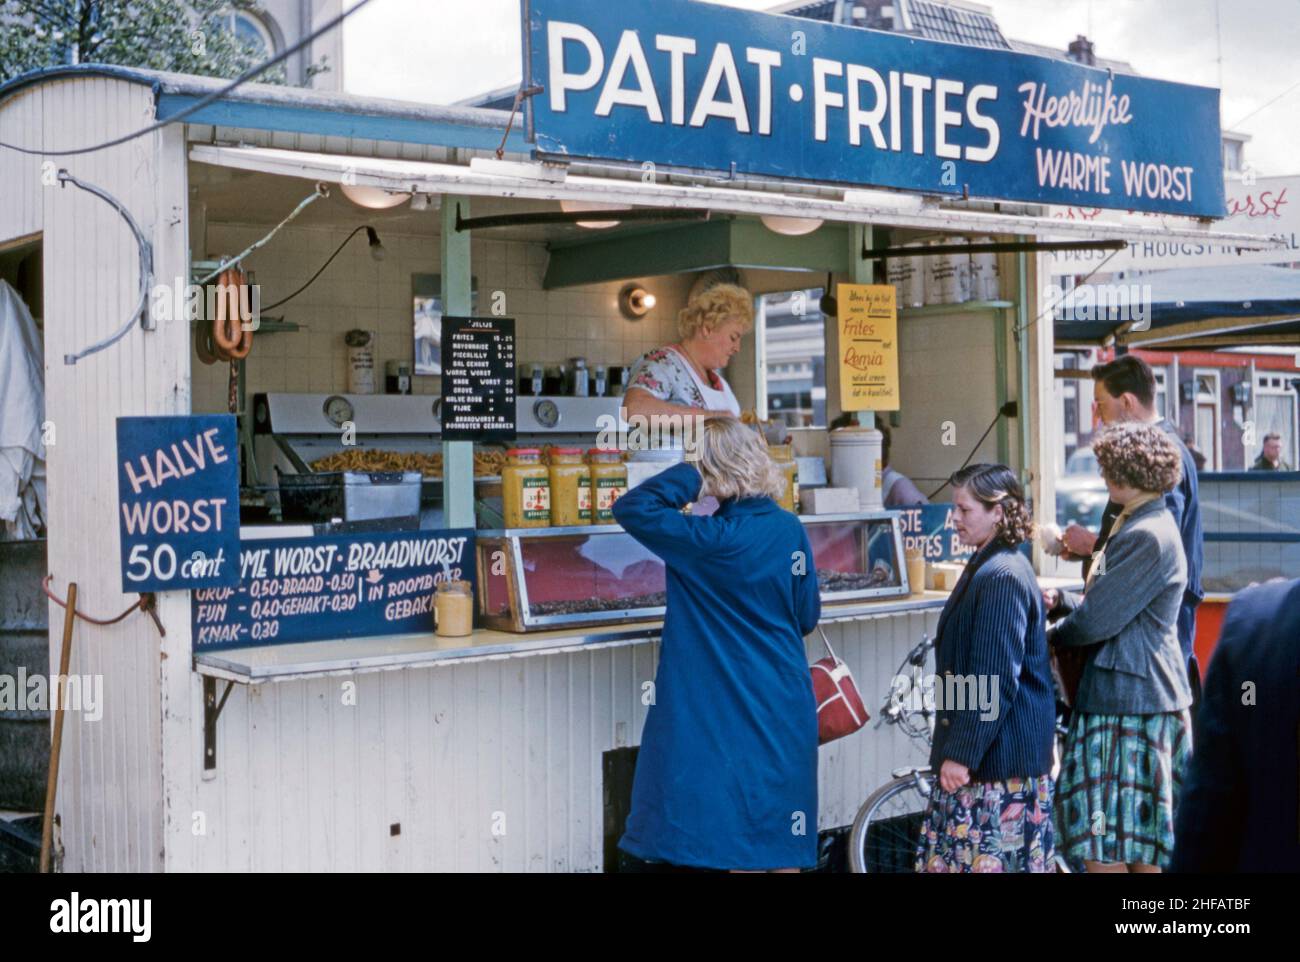 Ein Imbiss, Imbiss-Marktstand, der köstliche (‘heerlijke’) Wurst und Chips (schlechteste und patat) im Zentrum von Apeldoorn, Gelderland, Niederlande, verkauft 1960. Dieses Bild stammt von einem Amateur Kodak 35mm Farbtransparenz - ein Vintage 1950s/1960s Foto. Stockfoto